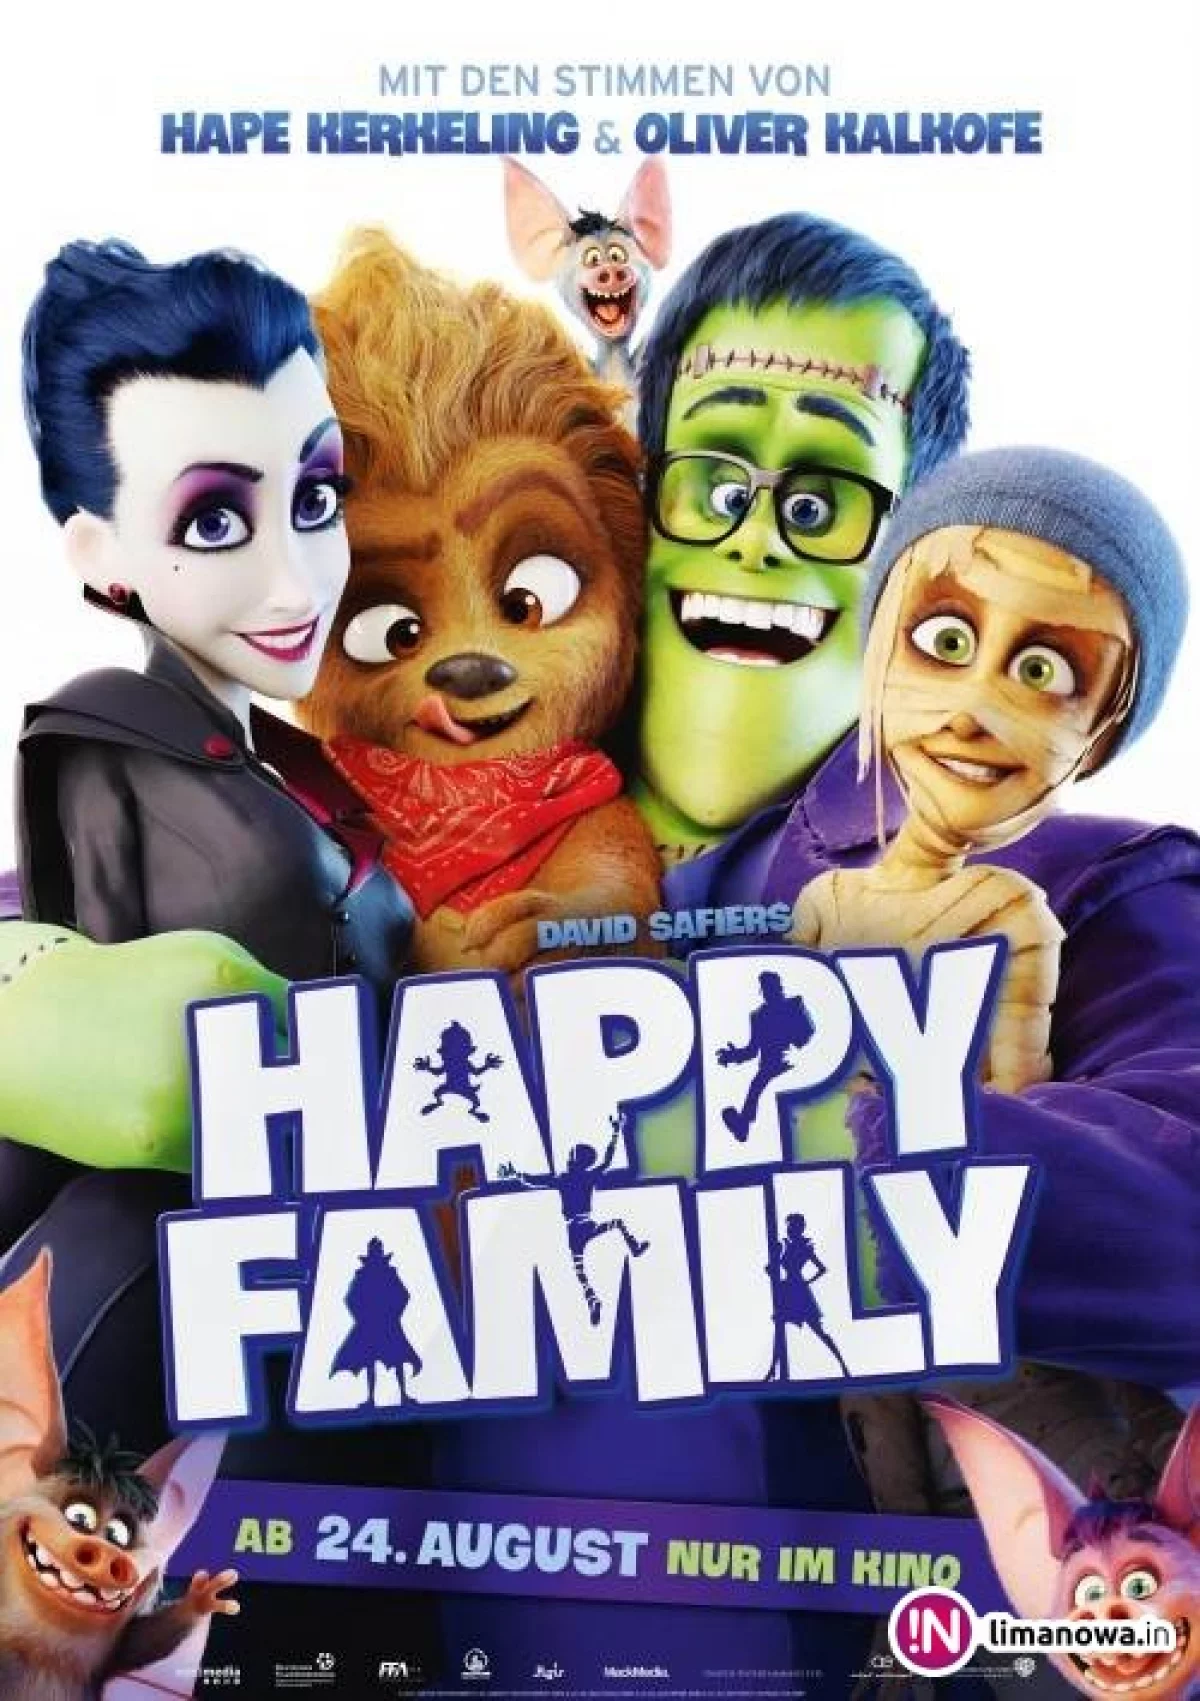 'Potworna rodzinka' od 10 listopada w kinie Klaps